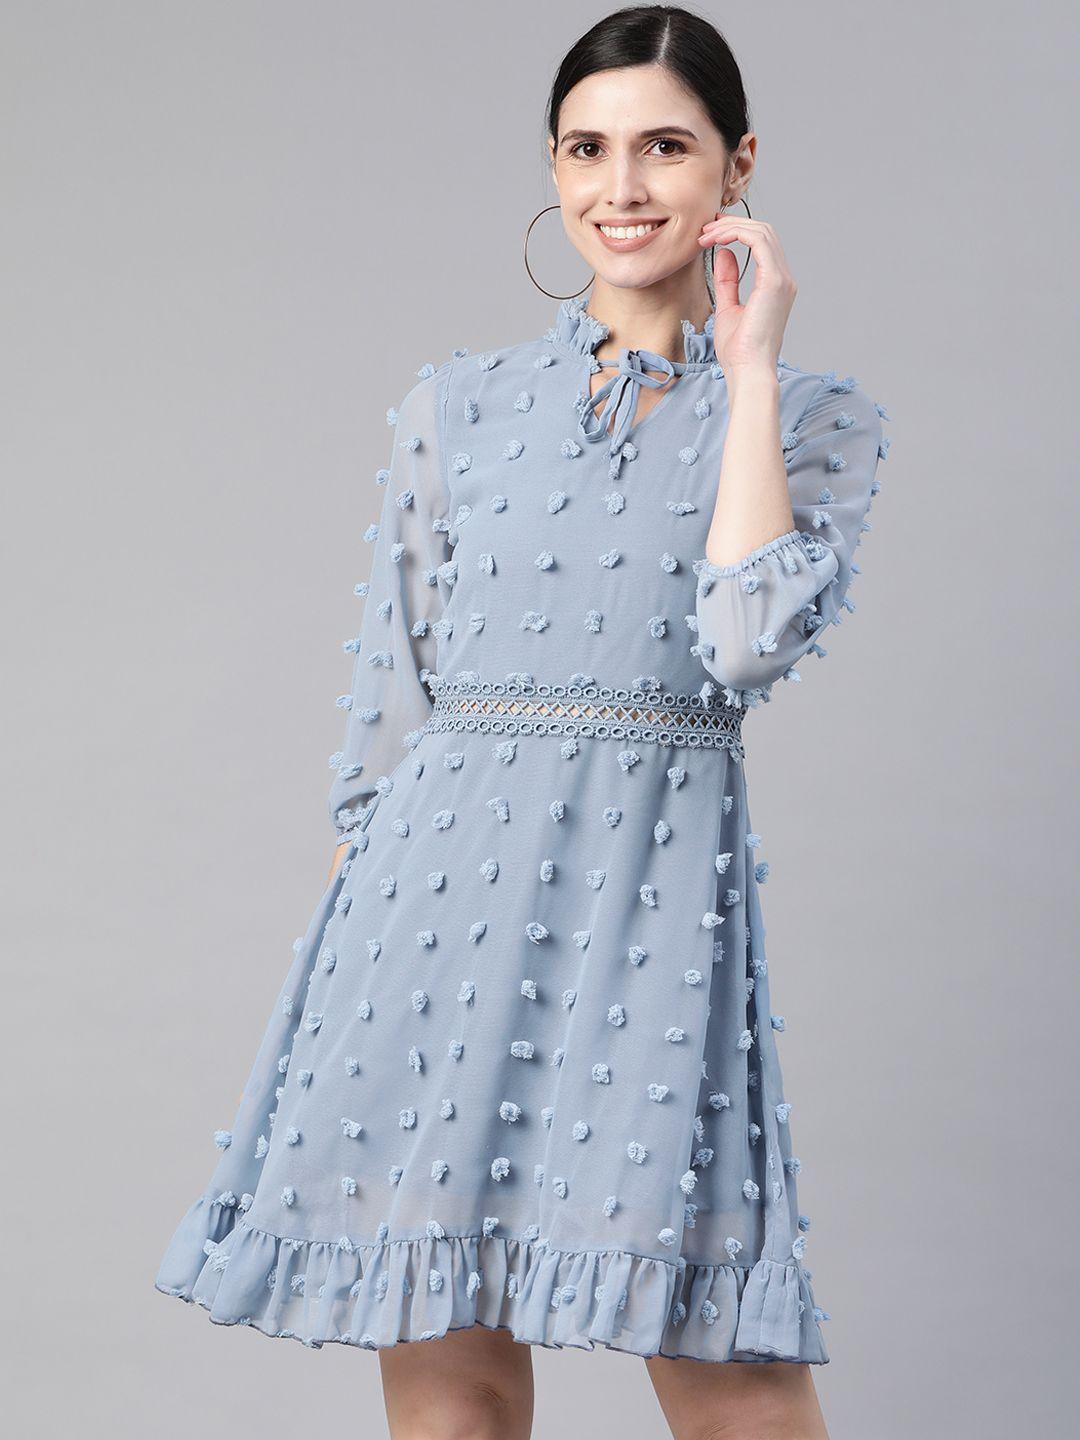 kassually women blue self-design a-line dress